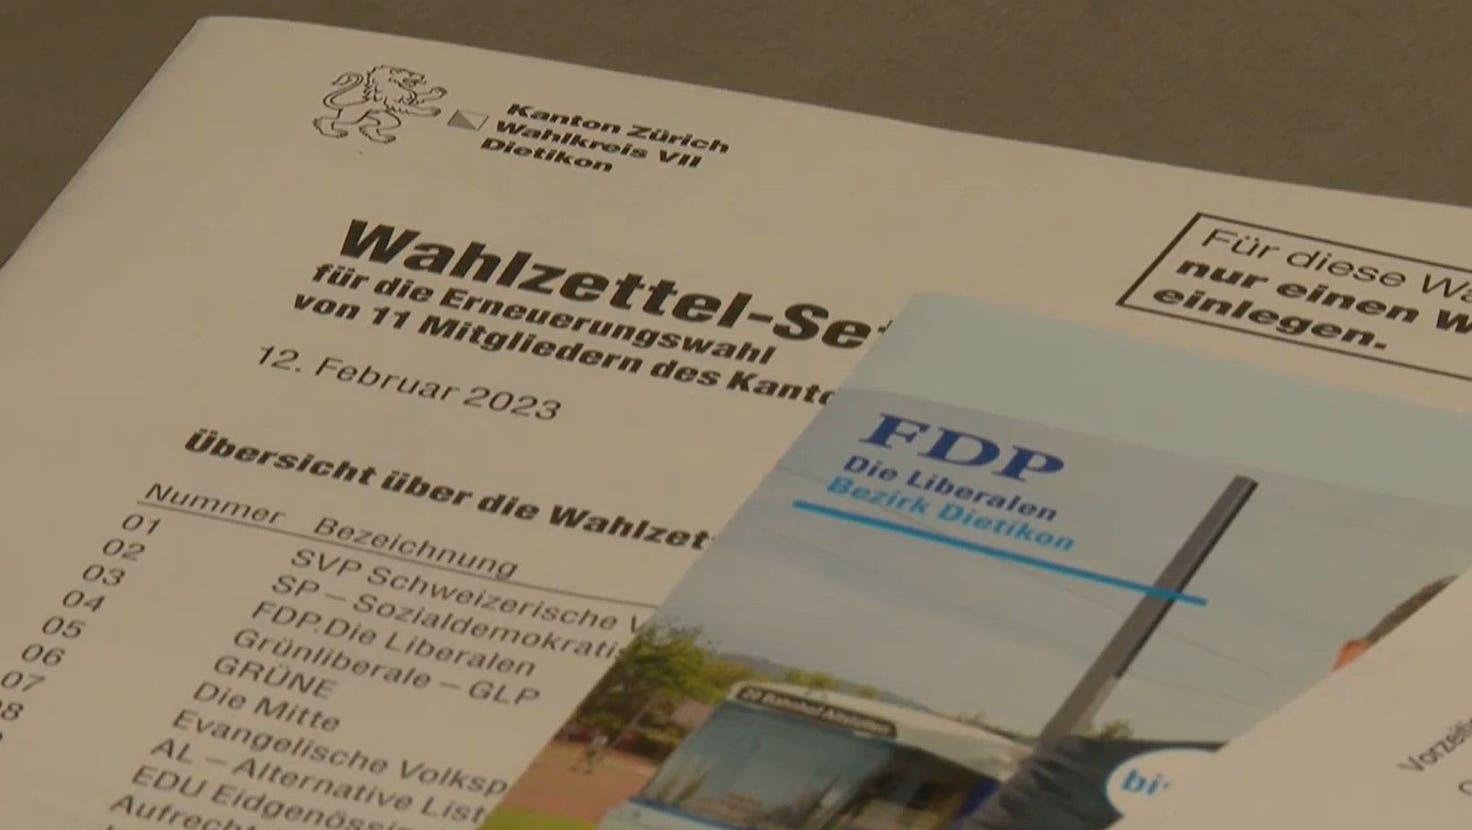 Die Gemeinde Geroldswil hatte den Wahlcouverts für die Kantonsrats- und Regierungsratswahlen 2023 einen FDP-Flyer beigelegt, der für die FDP-Kantonsratskandidierenden und die FDP-Regierungsratskandidierenden warb. Das war unzulässig, wie nun auch die Antwort des Kantons auf den Stimm (TeleZüri)